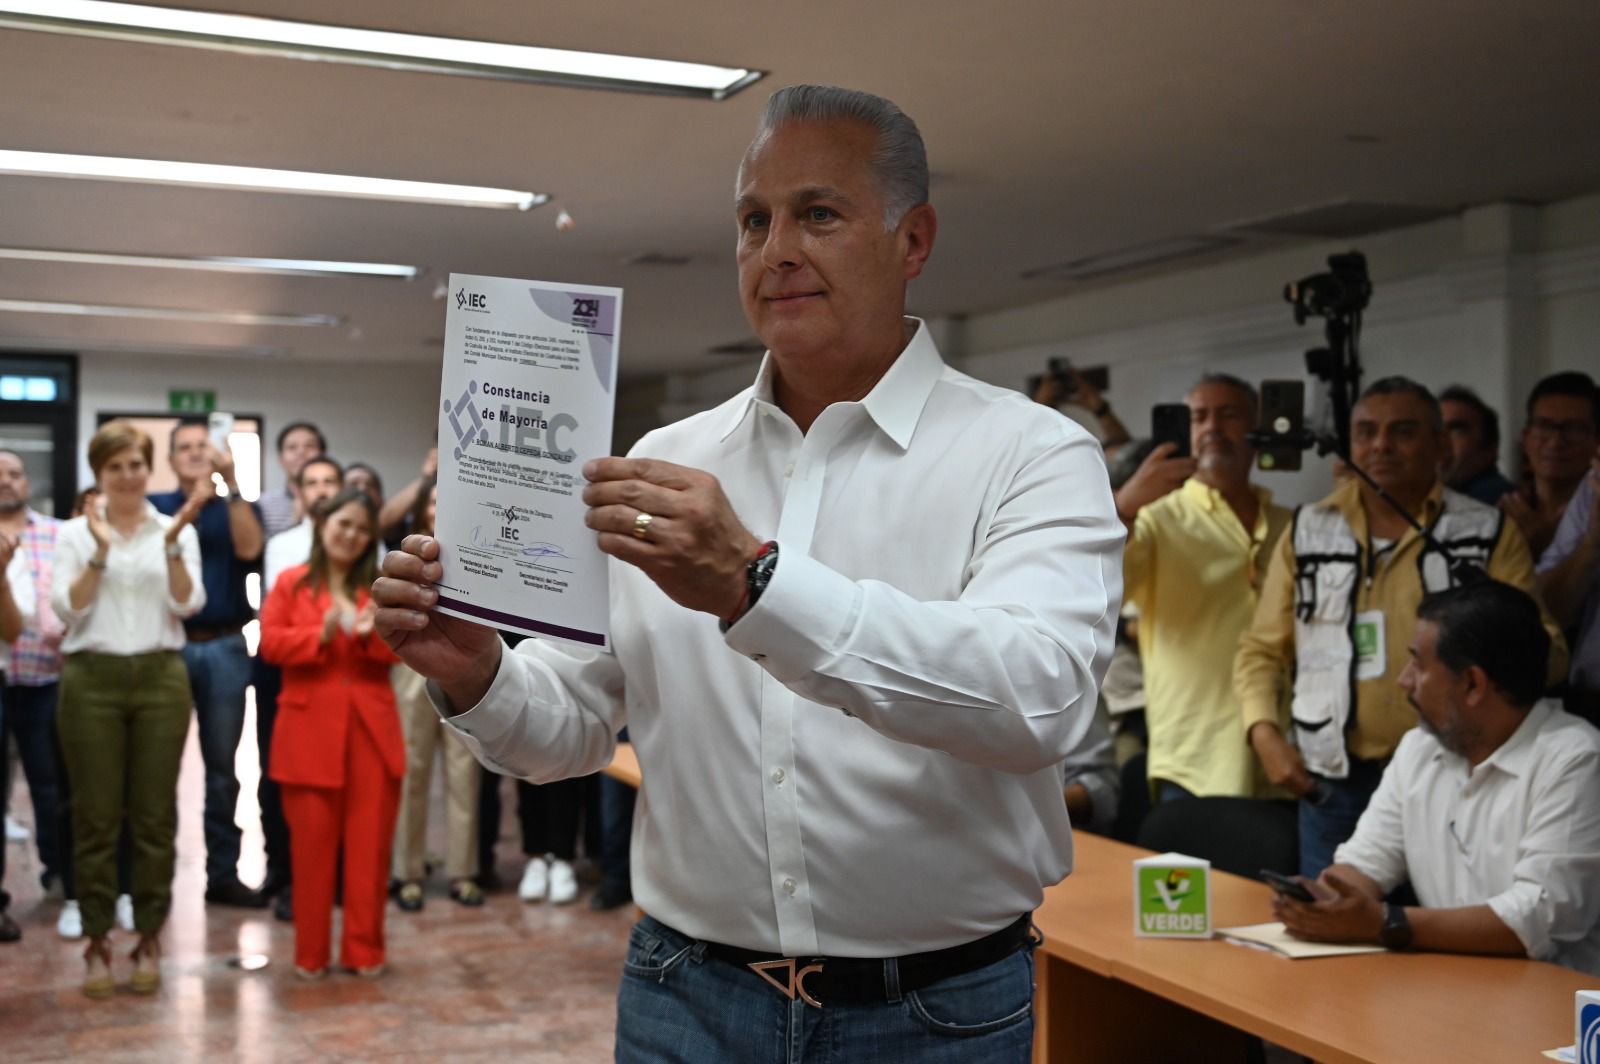 Confirma Tribunal Electoral triunfo de Román Cepeda y desecha impugnaciones de Morena